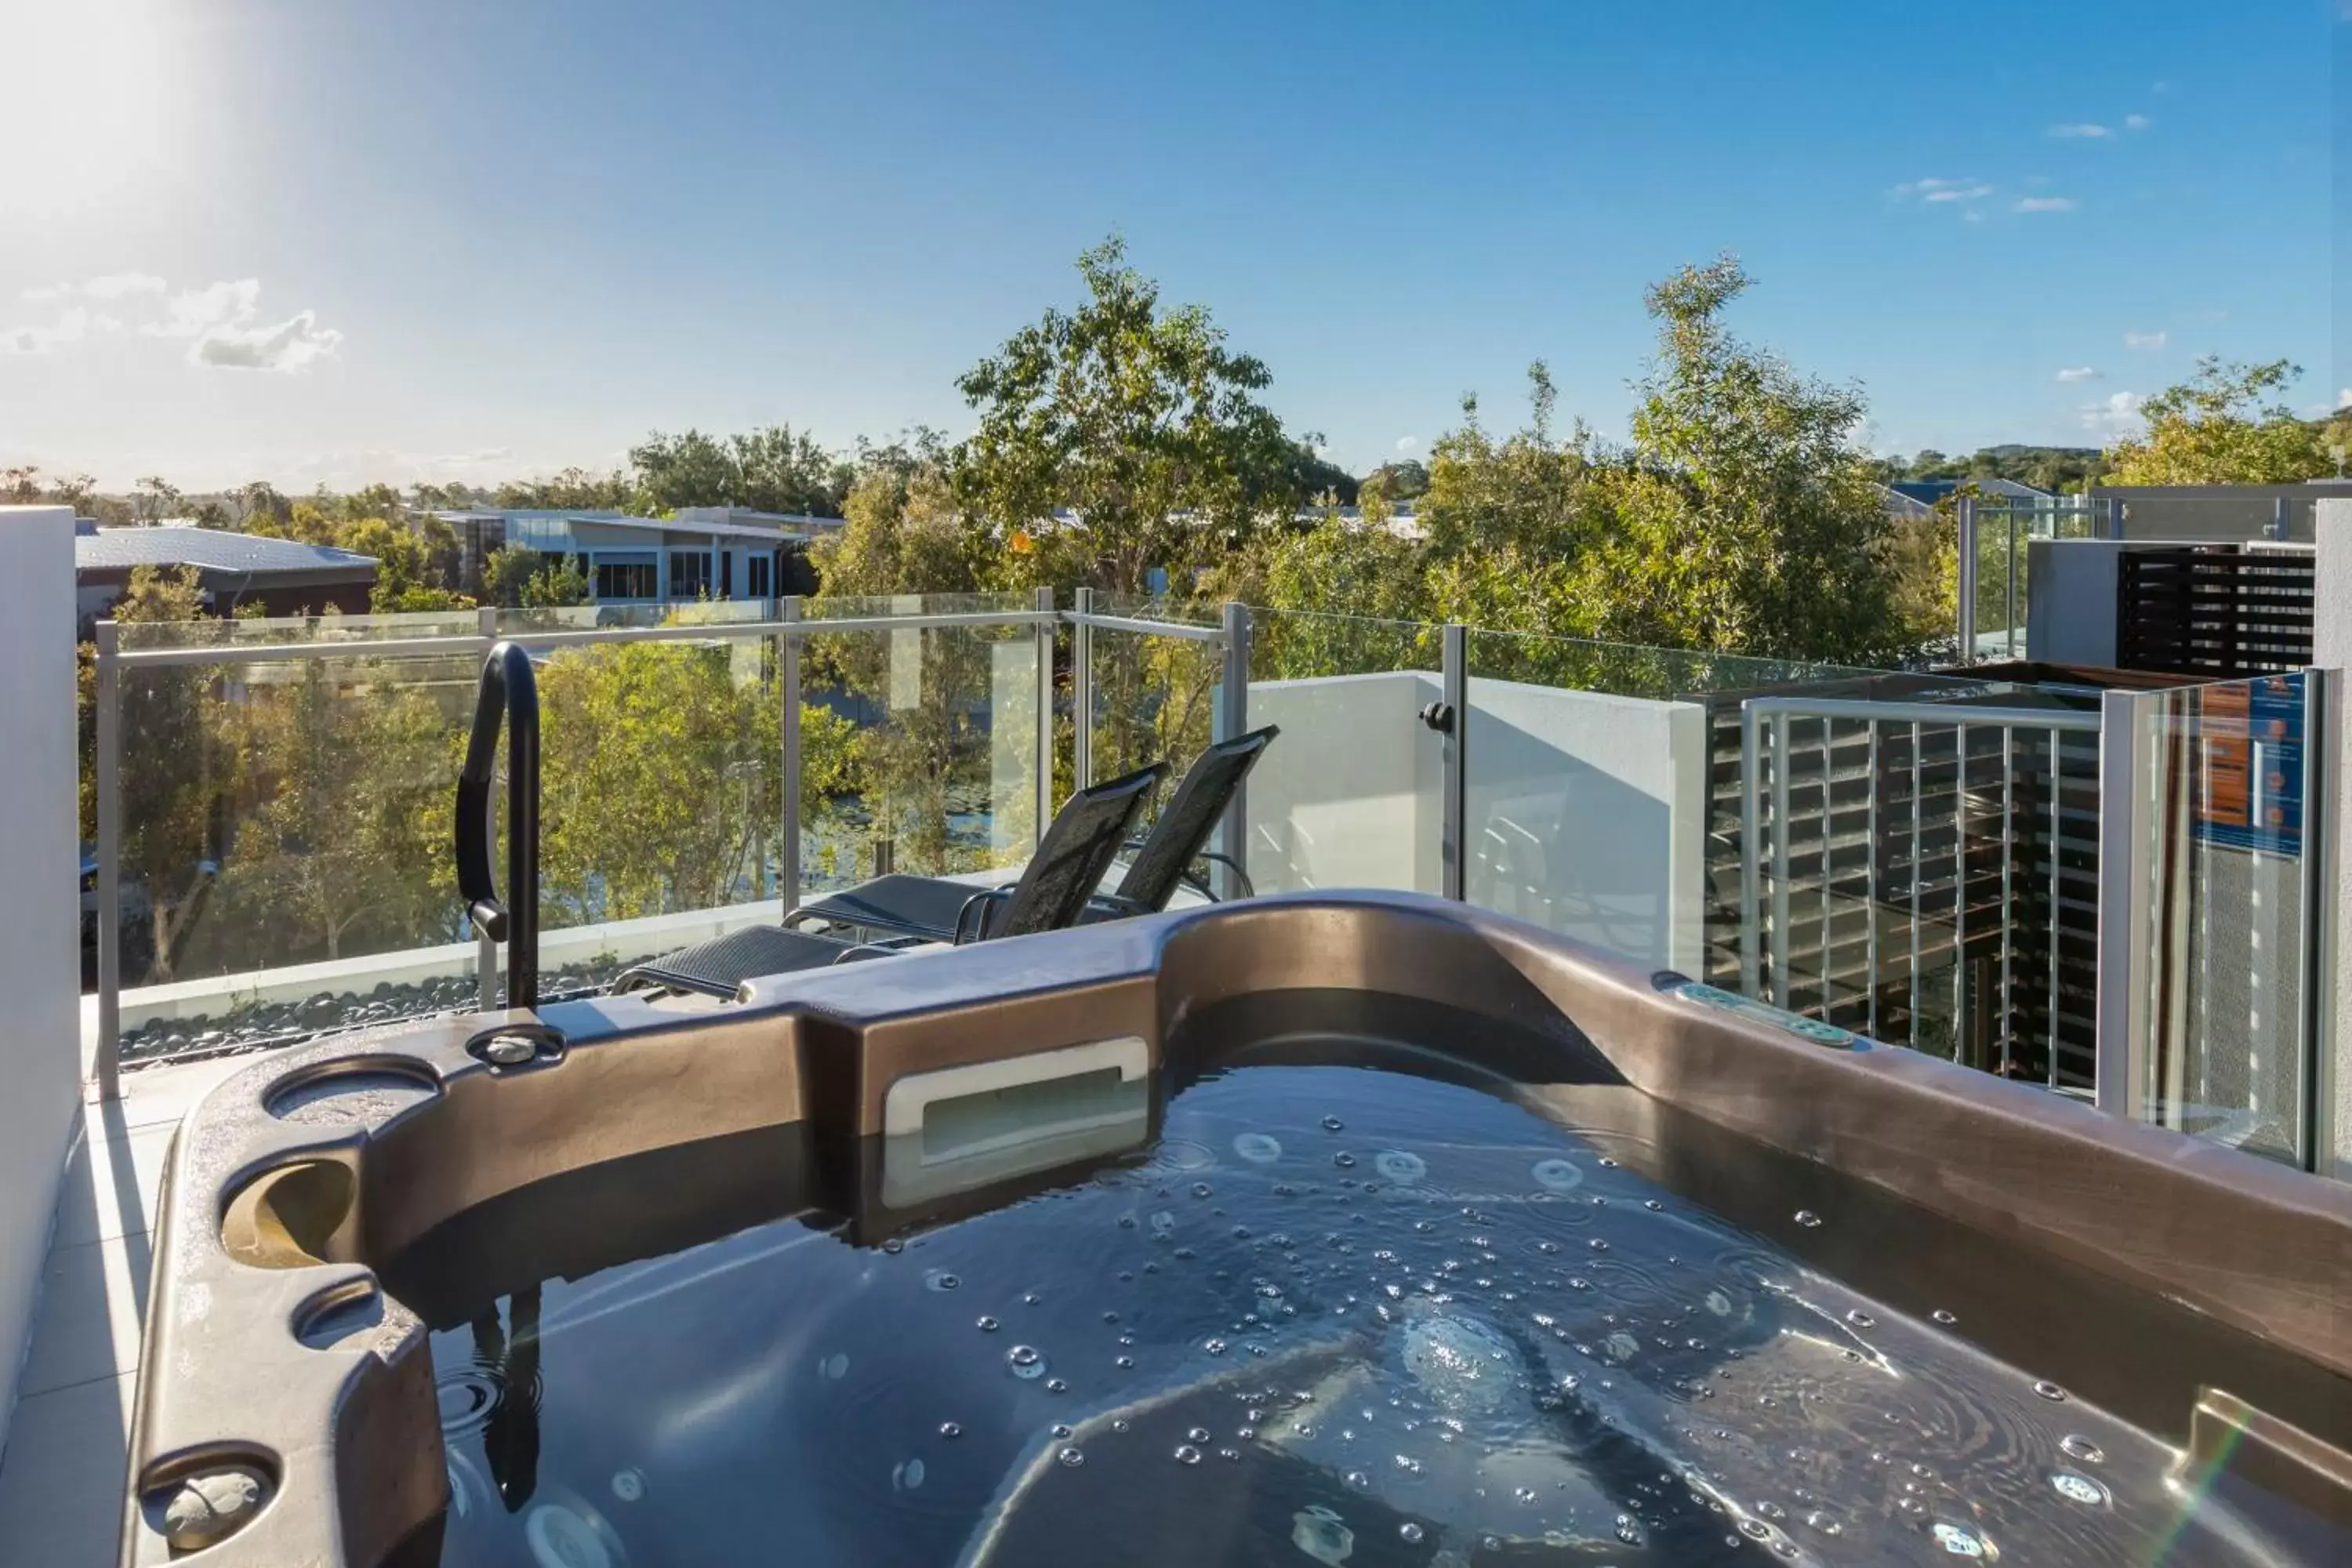 Hot Tub, Swimming Pool in RACV Noosa Resort